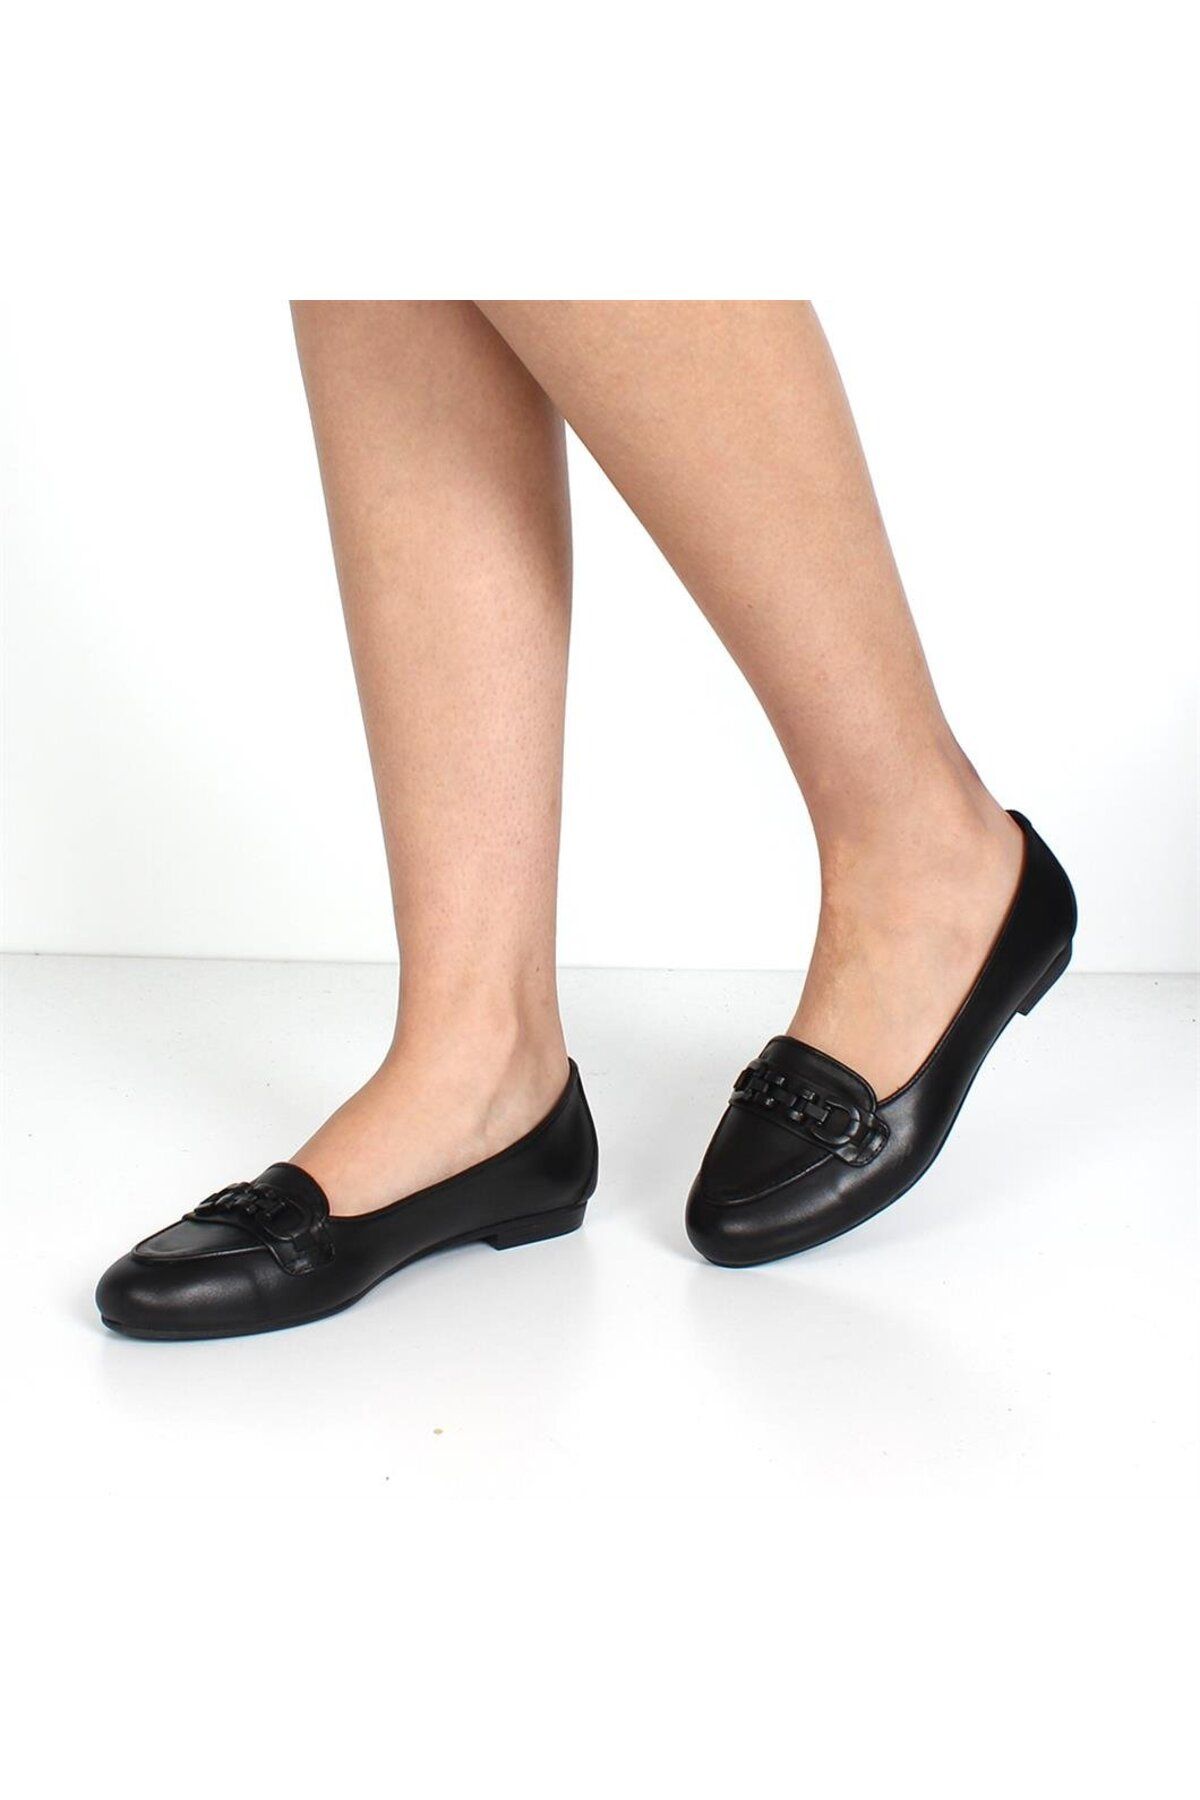 Celal Gültekin Siyah Deri Ayakkabı Kadın Babet 660 25011-1